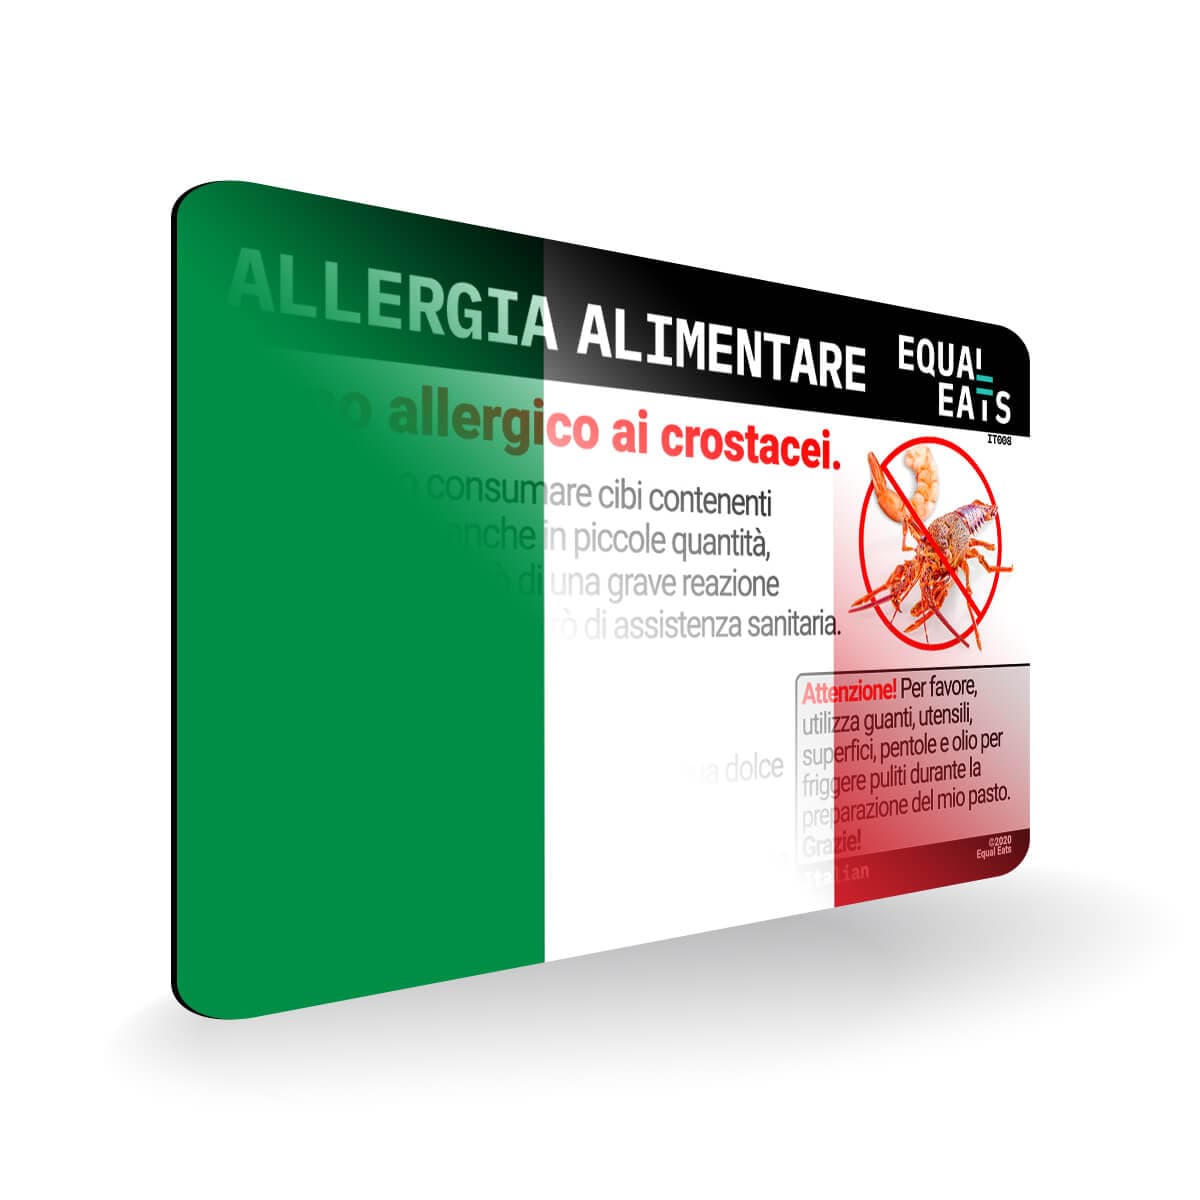 Crustacean Allergy in Italian. Crustacean Allergy Card for Italy